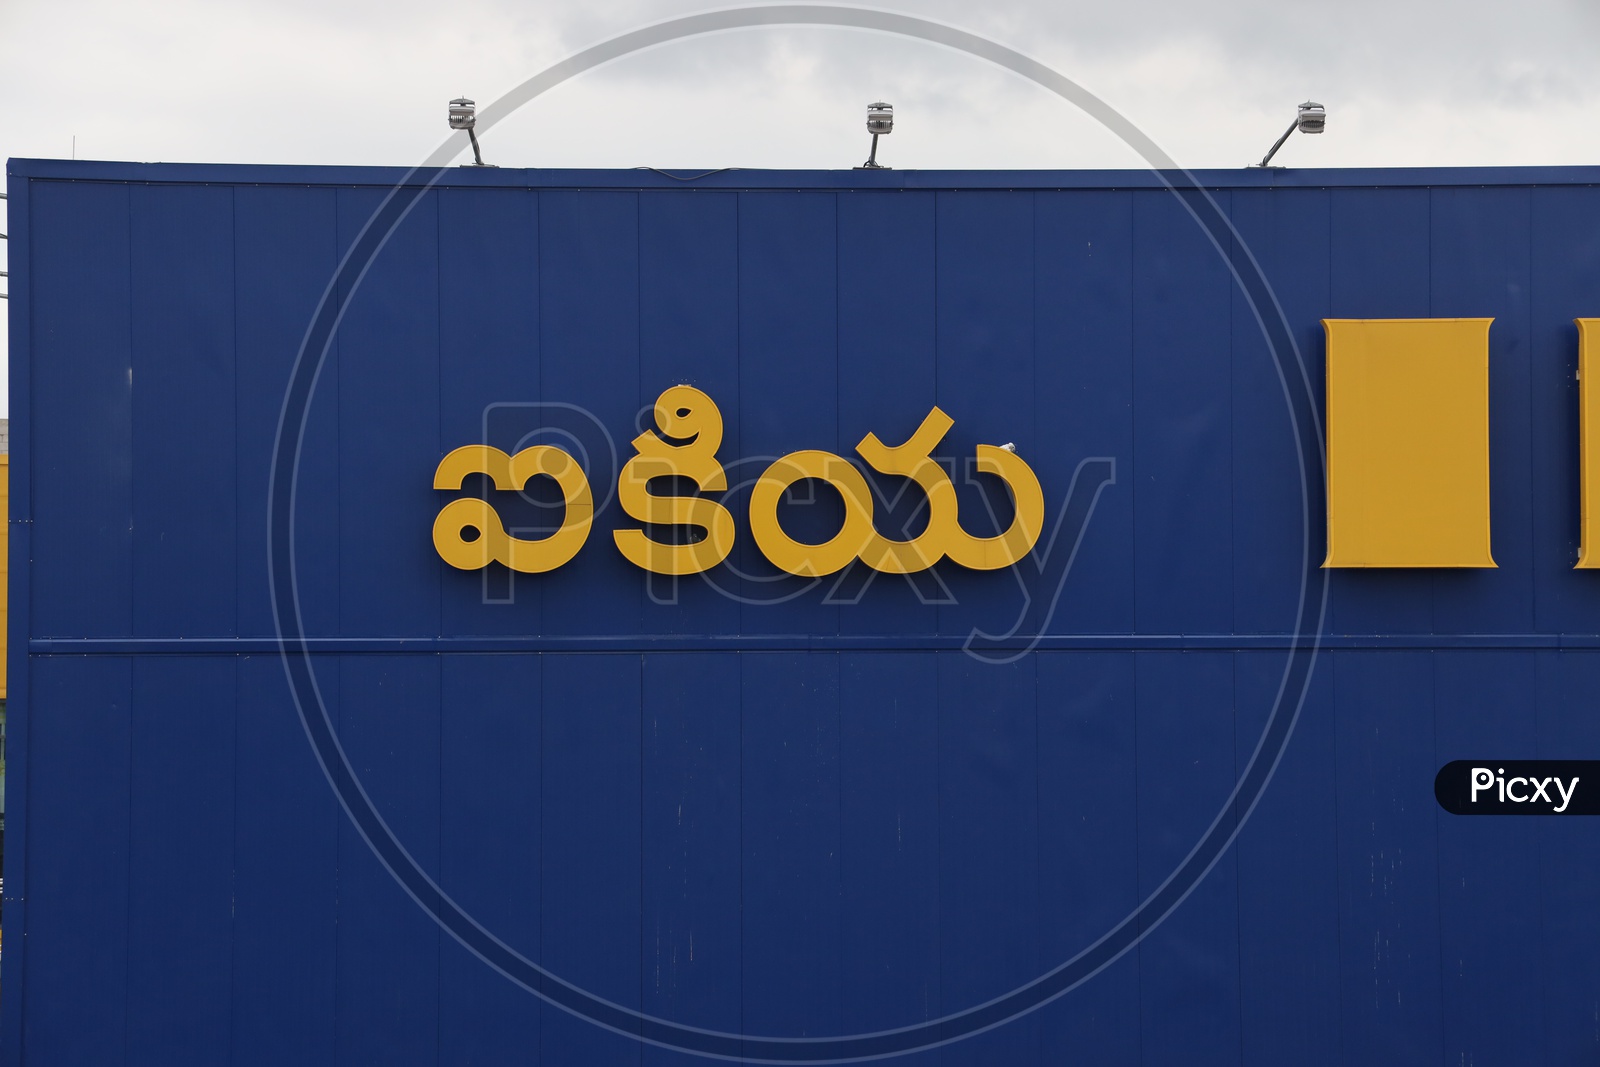 IKEA  Name In Telugu